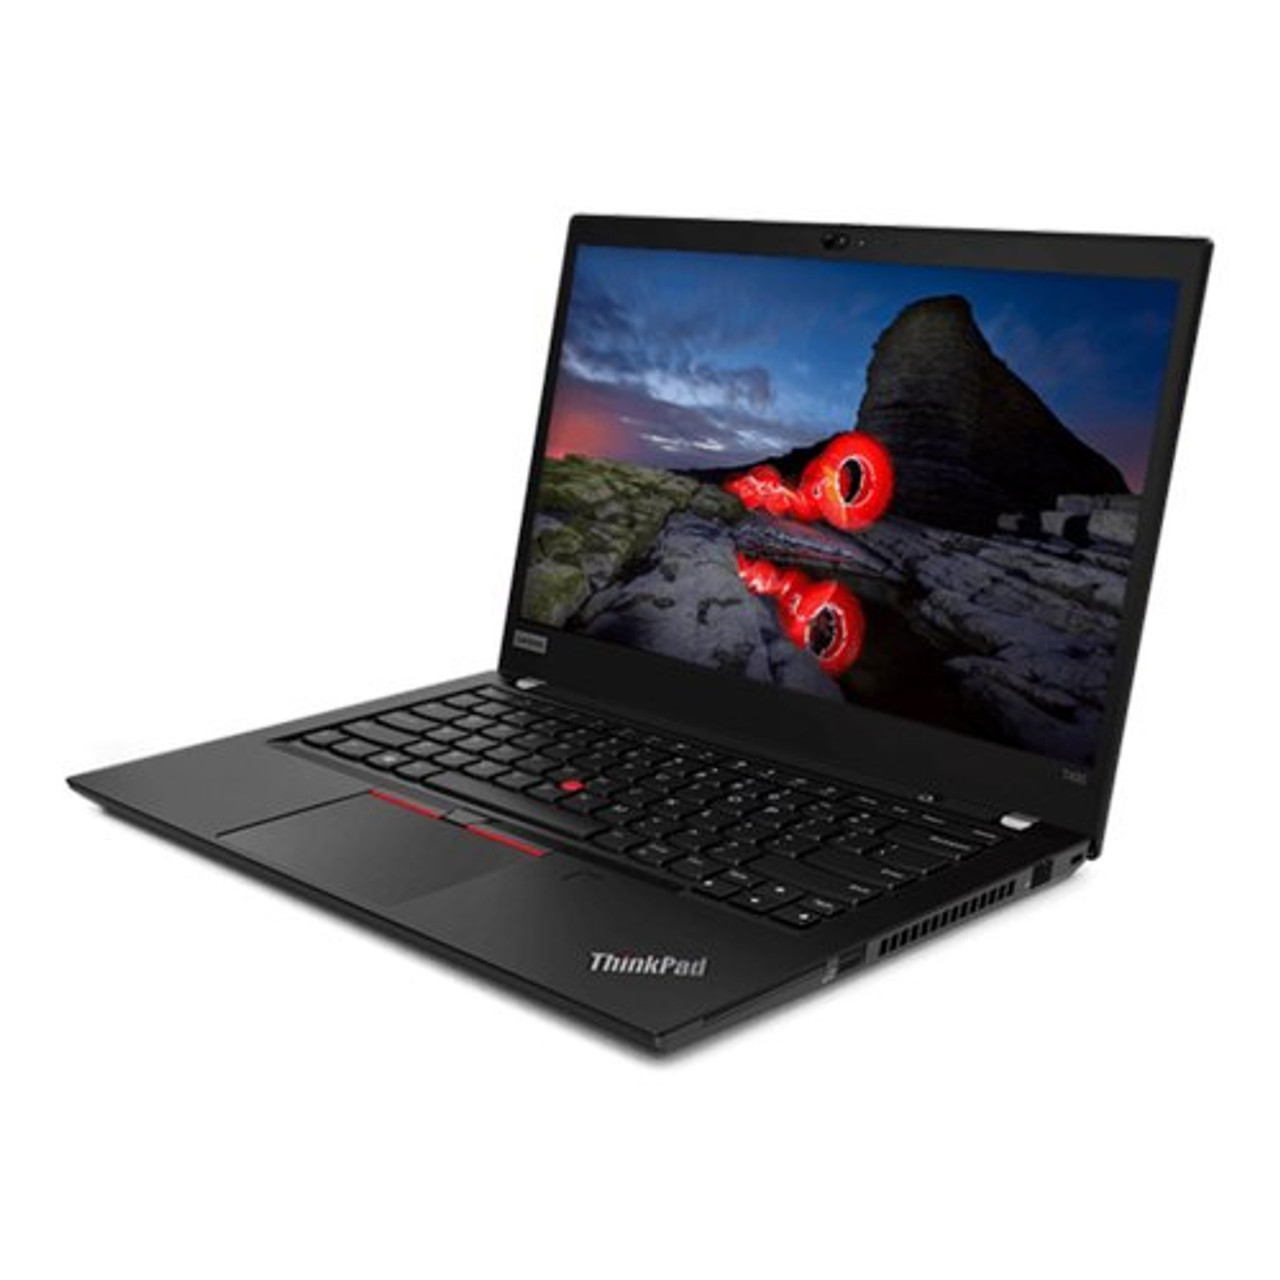 Lenovo ThinkPad T490s 14" FHD Touch i7-8565U 16GB 512GB SSD Cam W10Pro Warranty